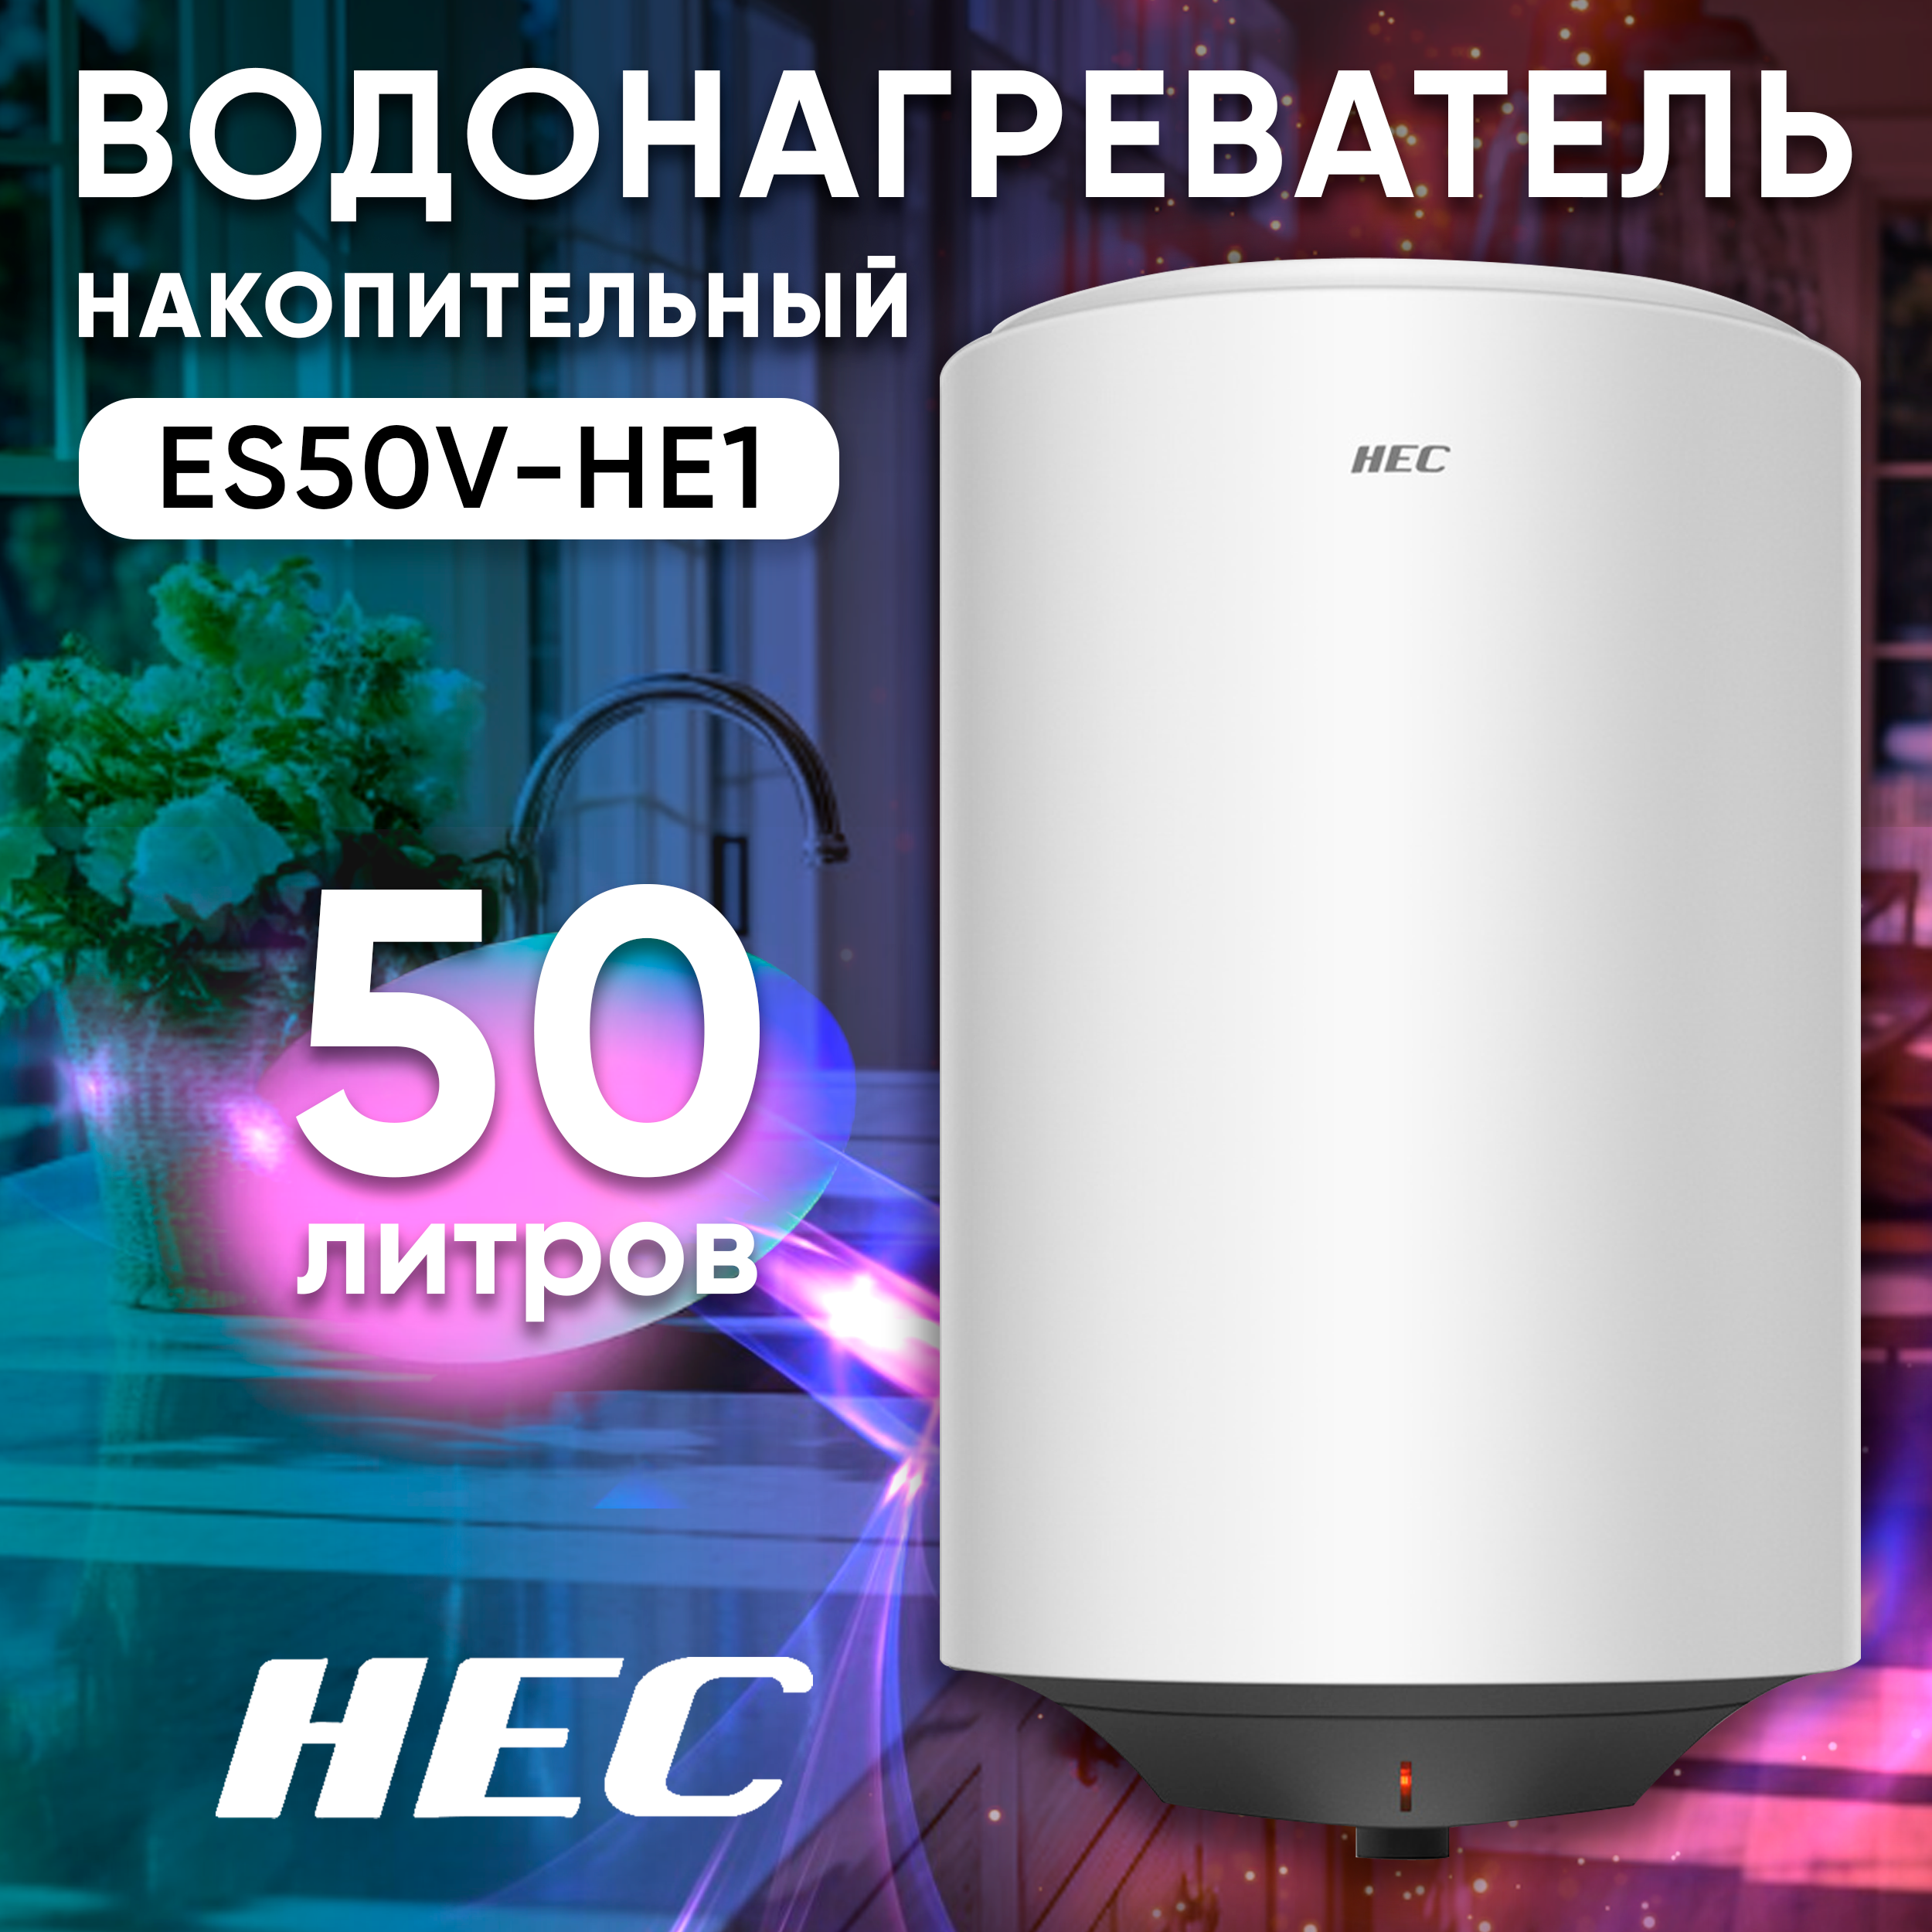 Водонагреватель накопительный Haier HEC ES50V-HE1 белый